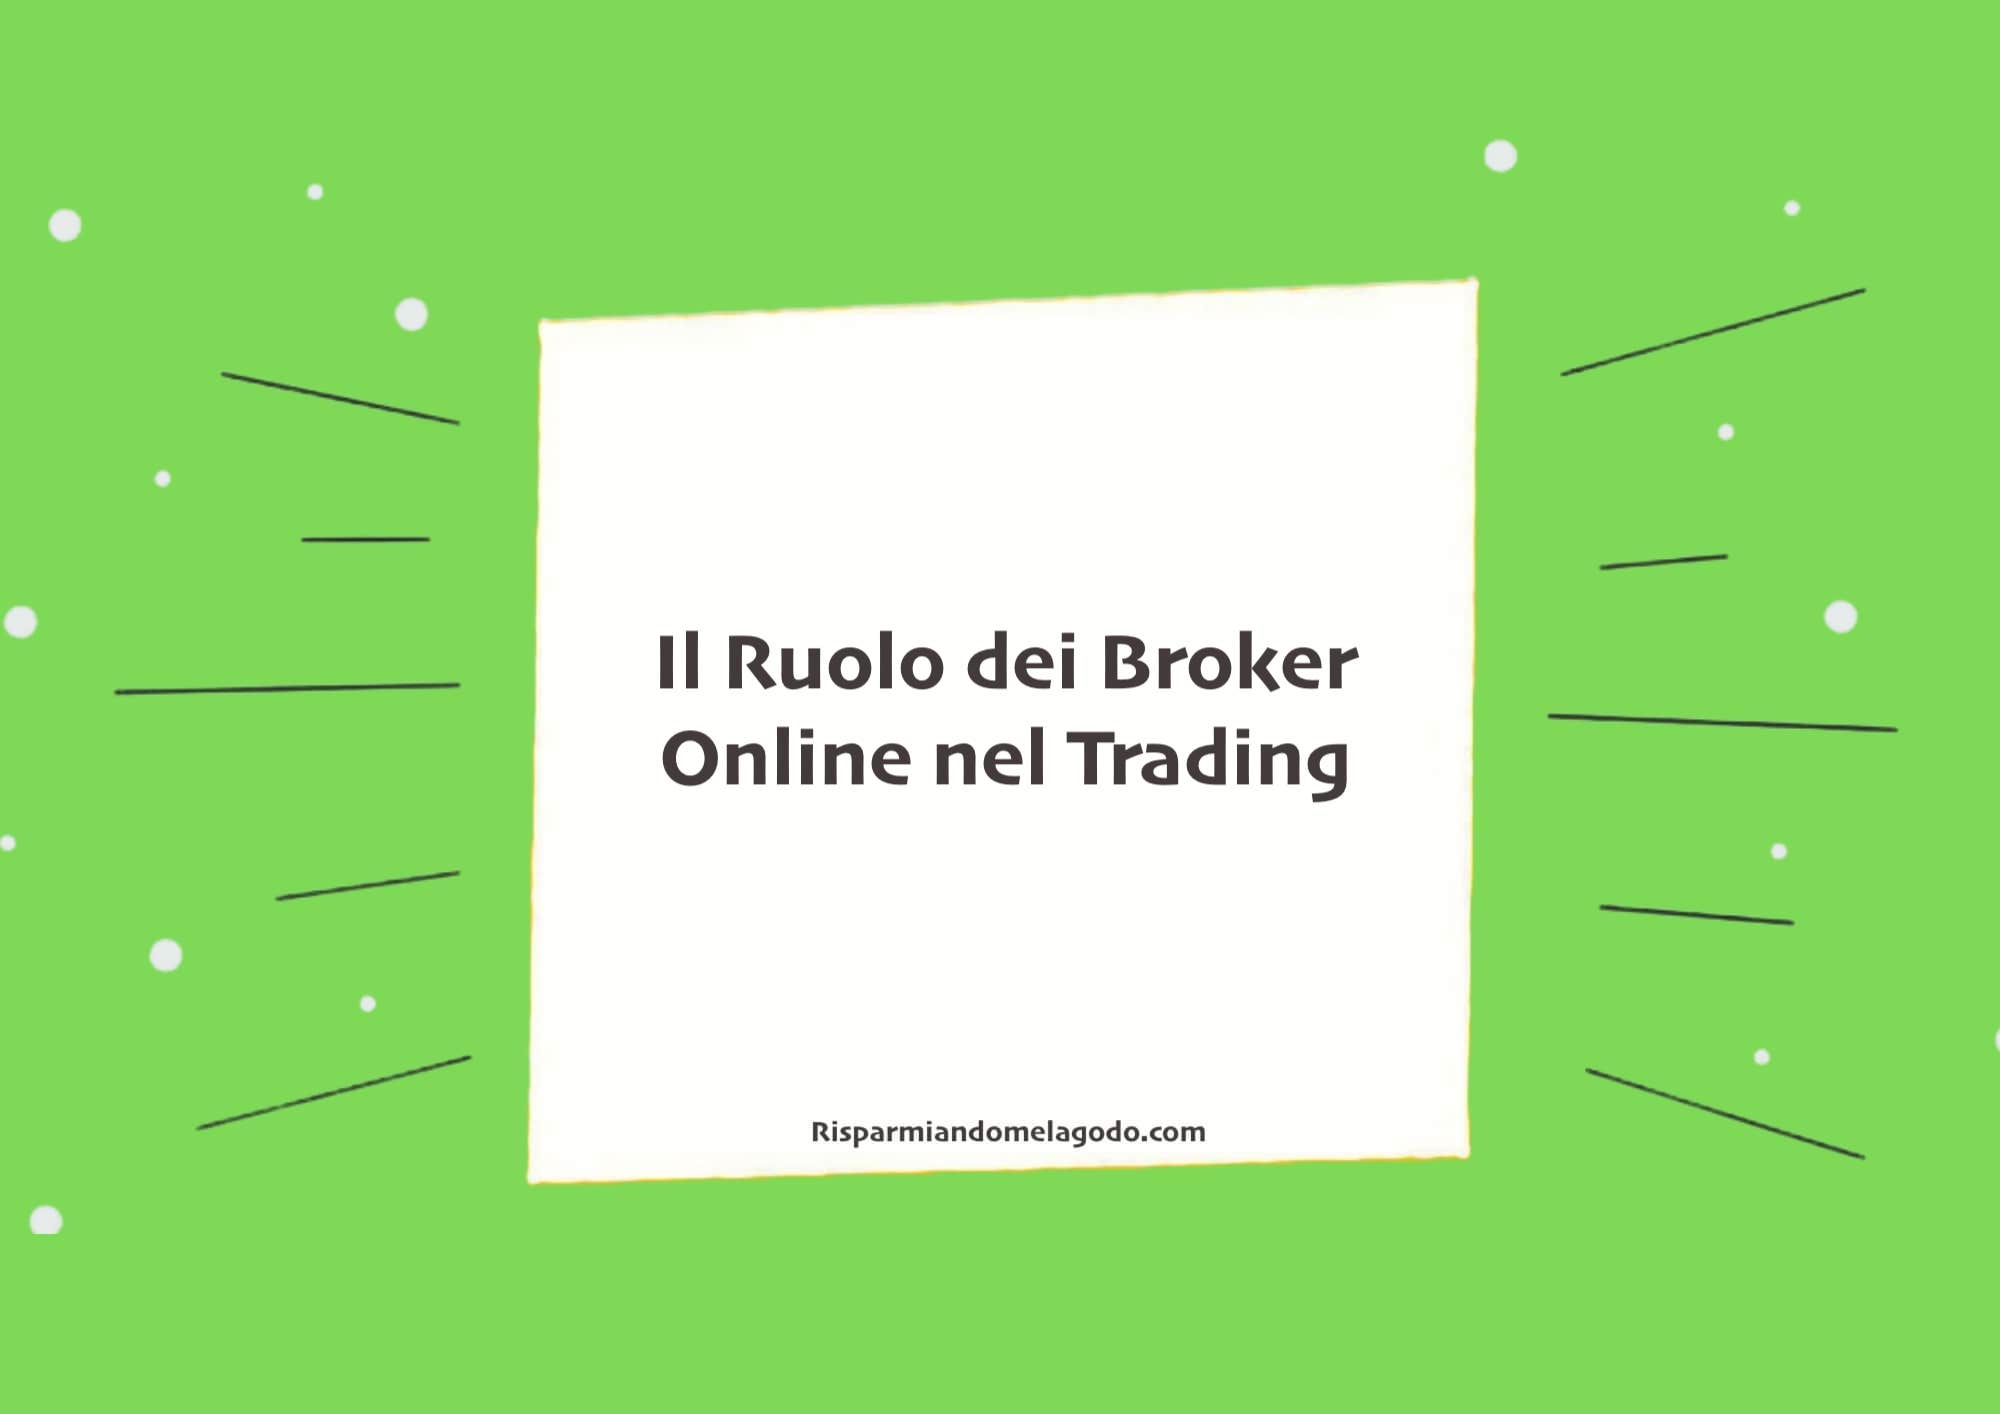 Il Ruolo dei Broker Online nel Trading